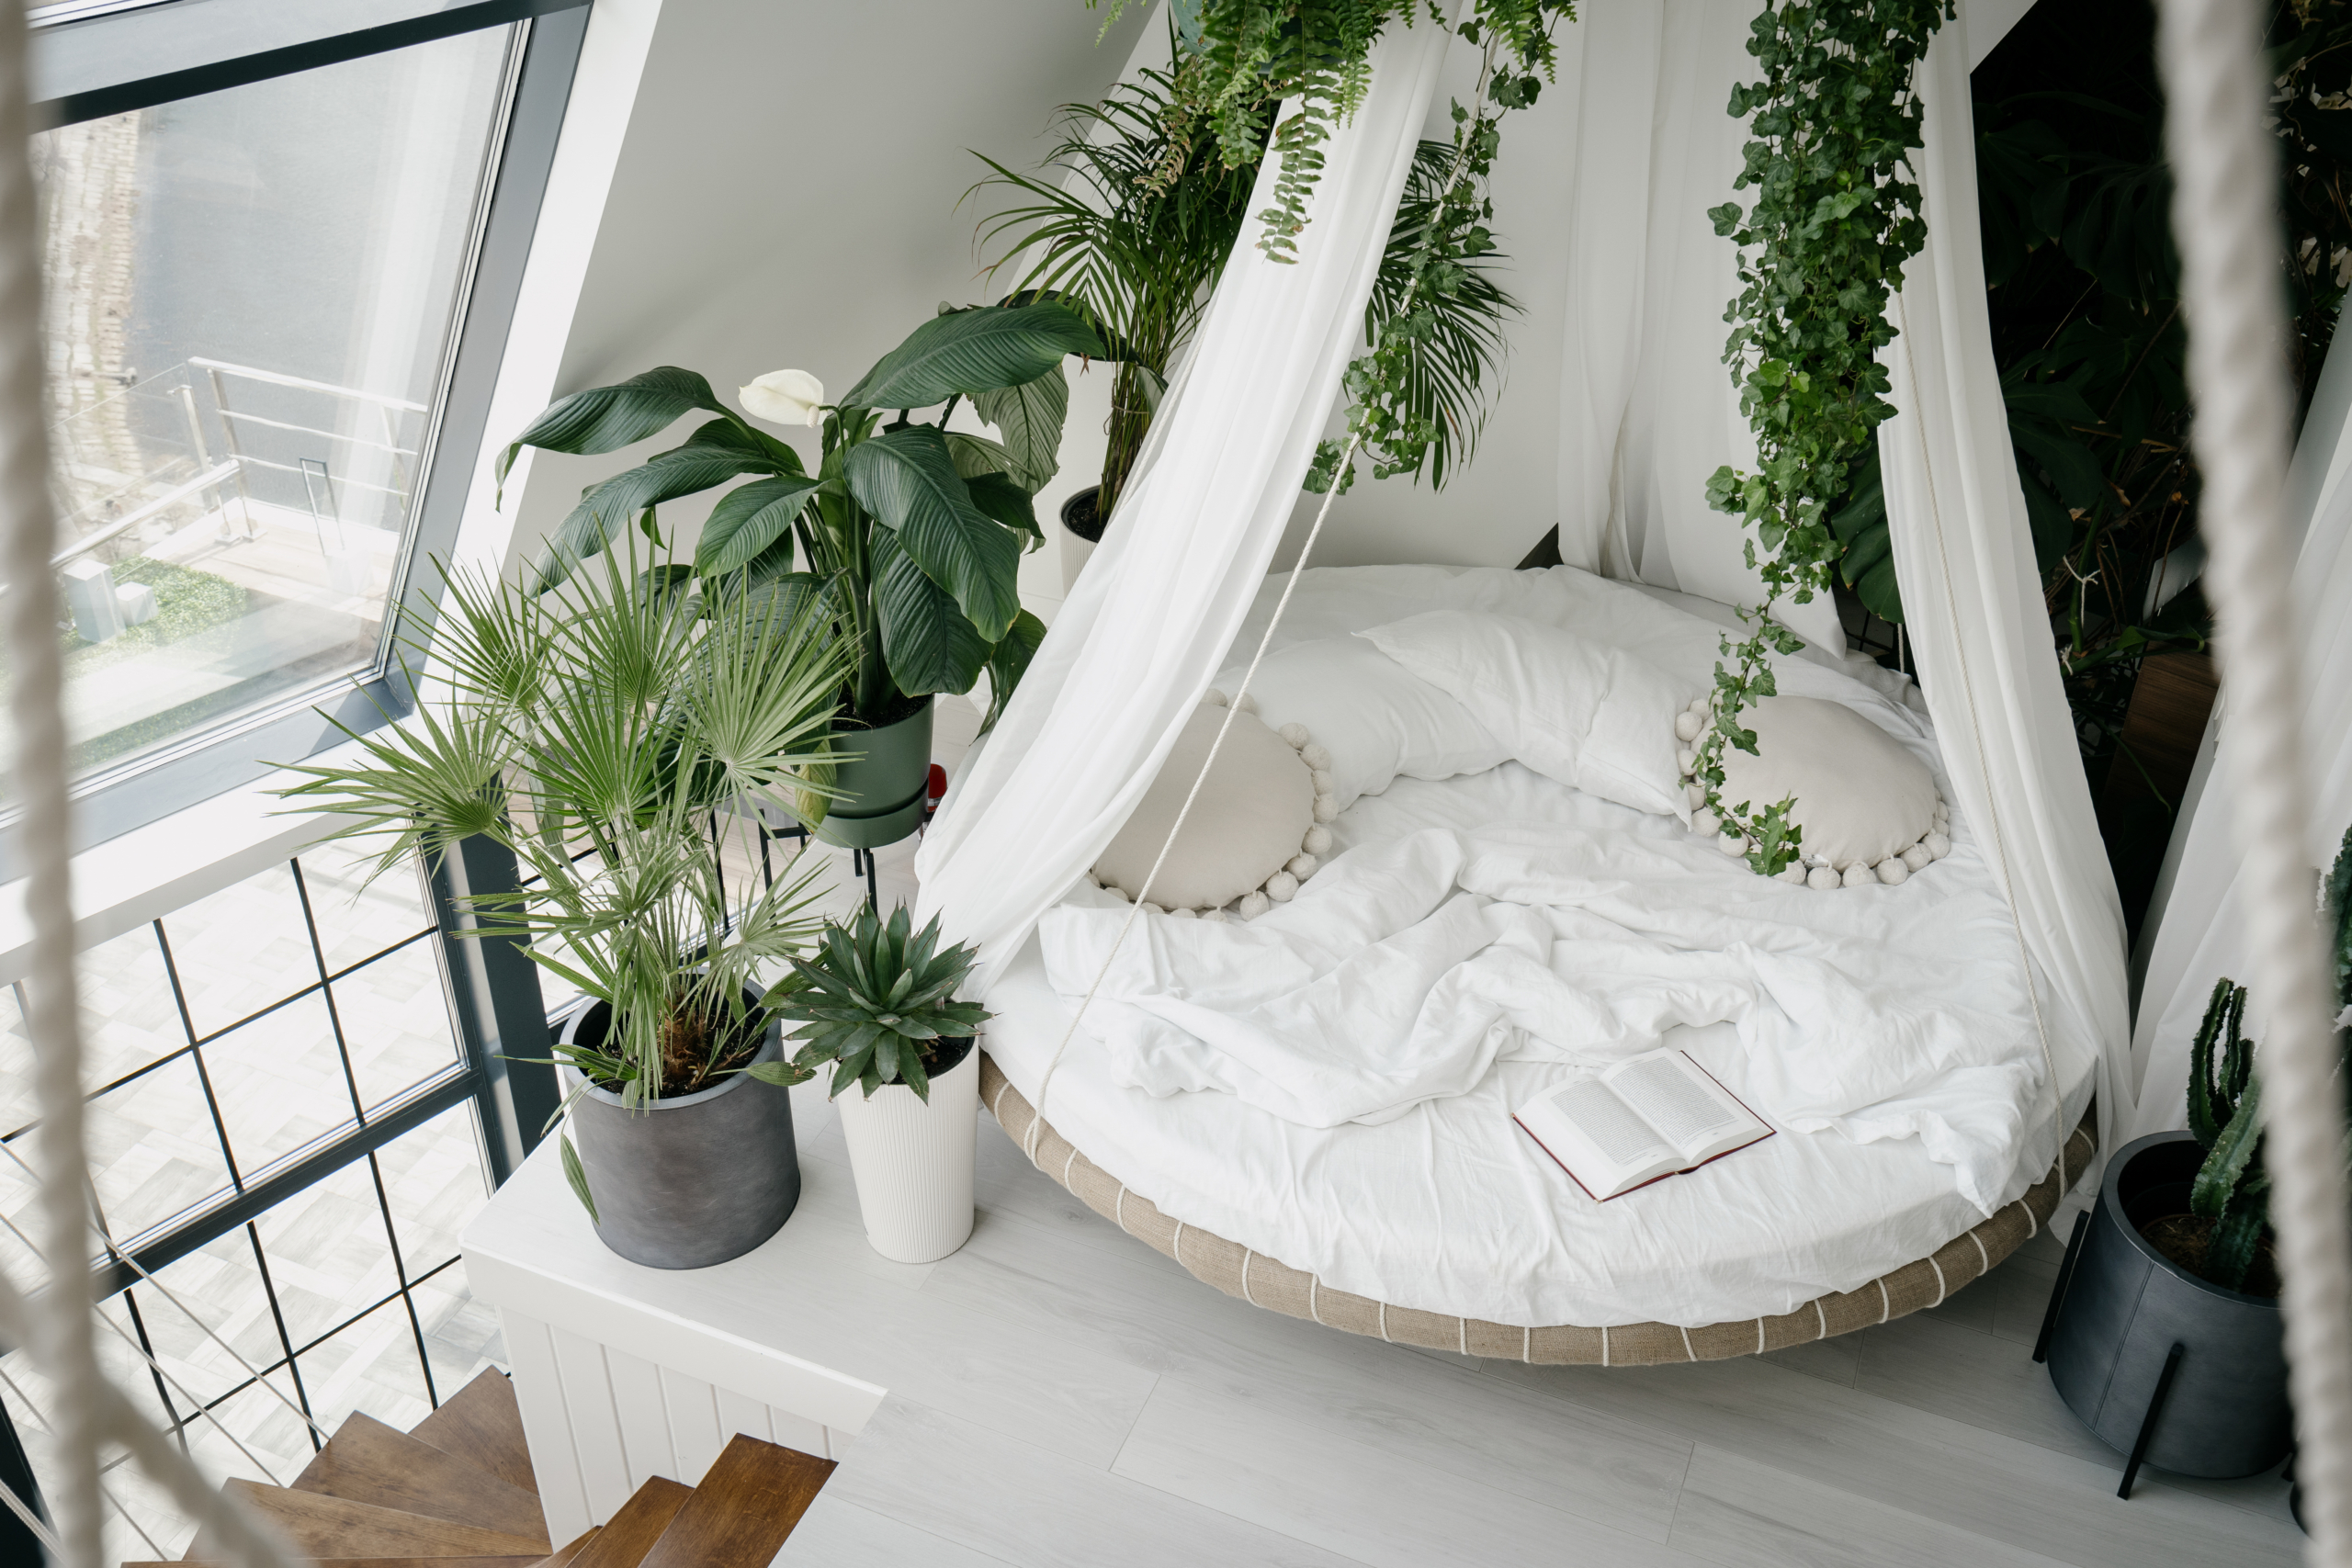 Sử dụng góc gác lửng để đặt một chiếc giường đung đưa, tạo cảm giác như đang nghỉ dưỡng. (Ảnh: Shutterstock)